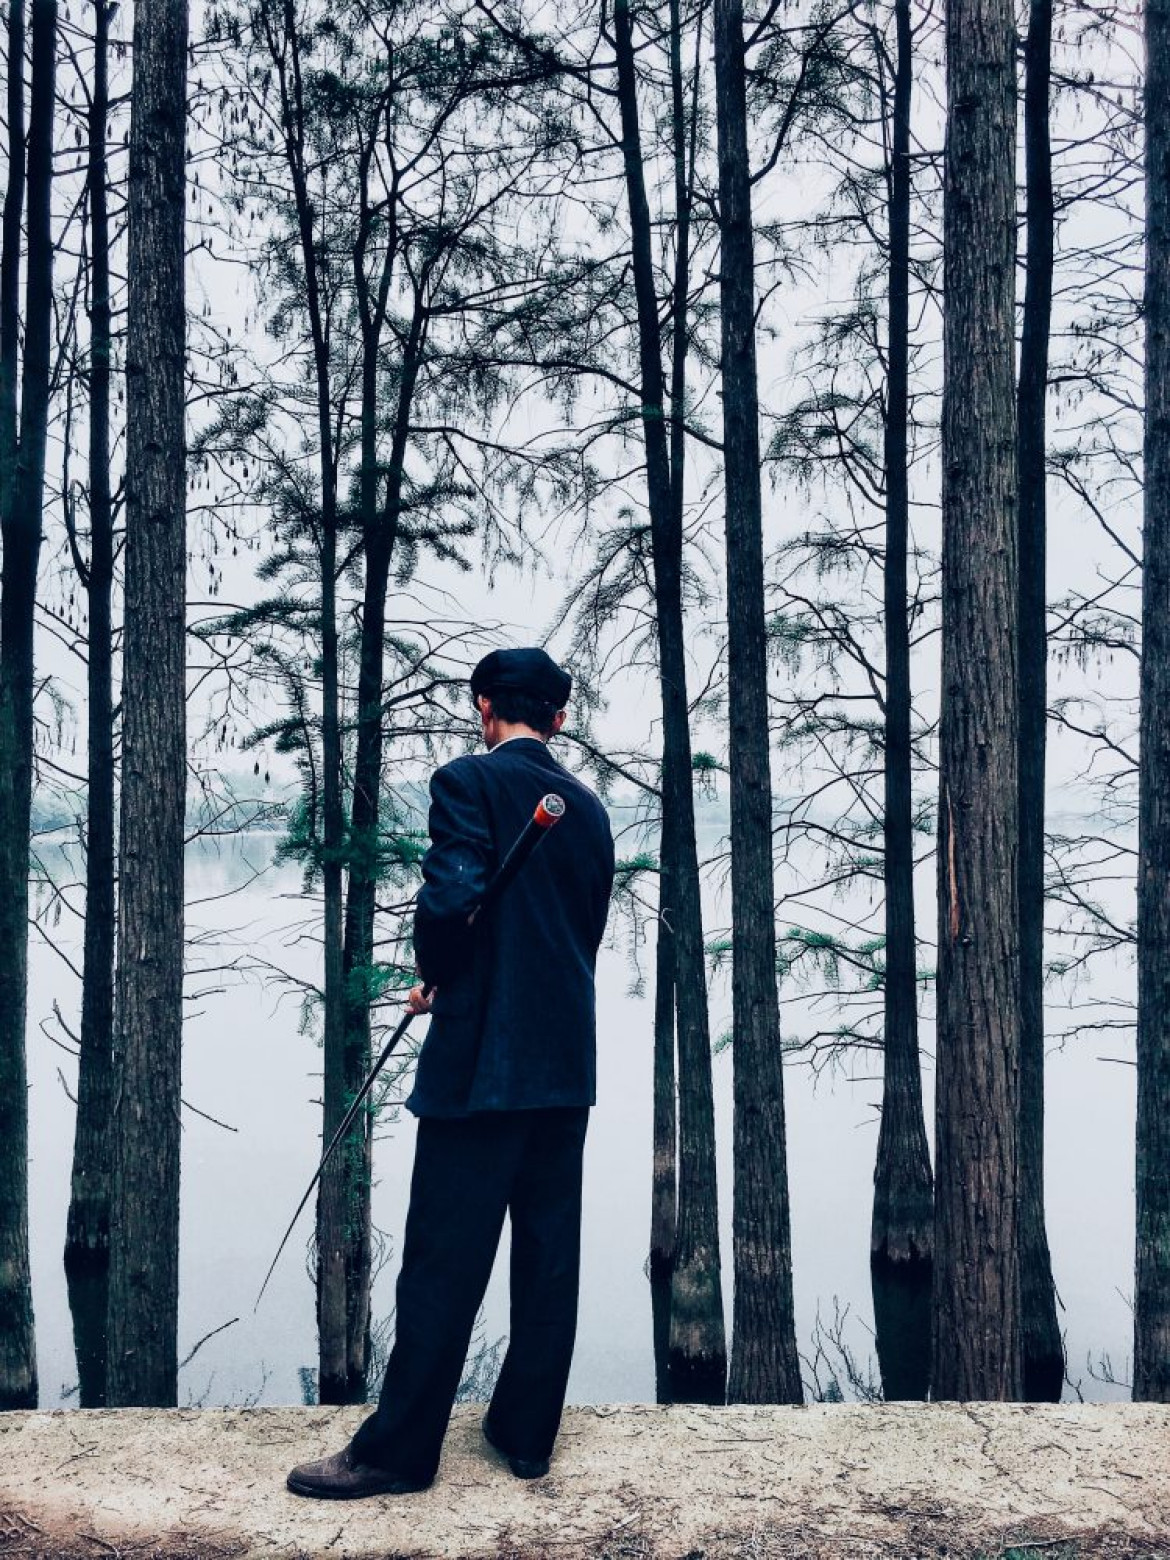 fot. Biao Peng, "Fishing", 1. miejsce w kategorii Lifestyle / IPPA 2019